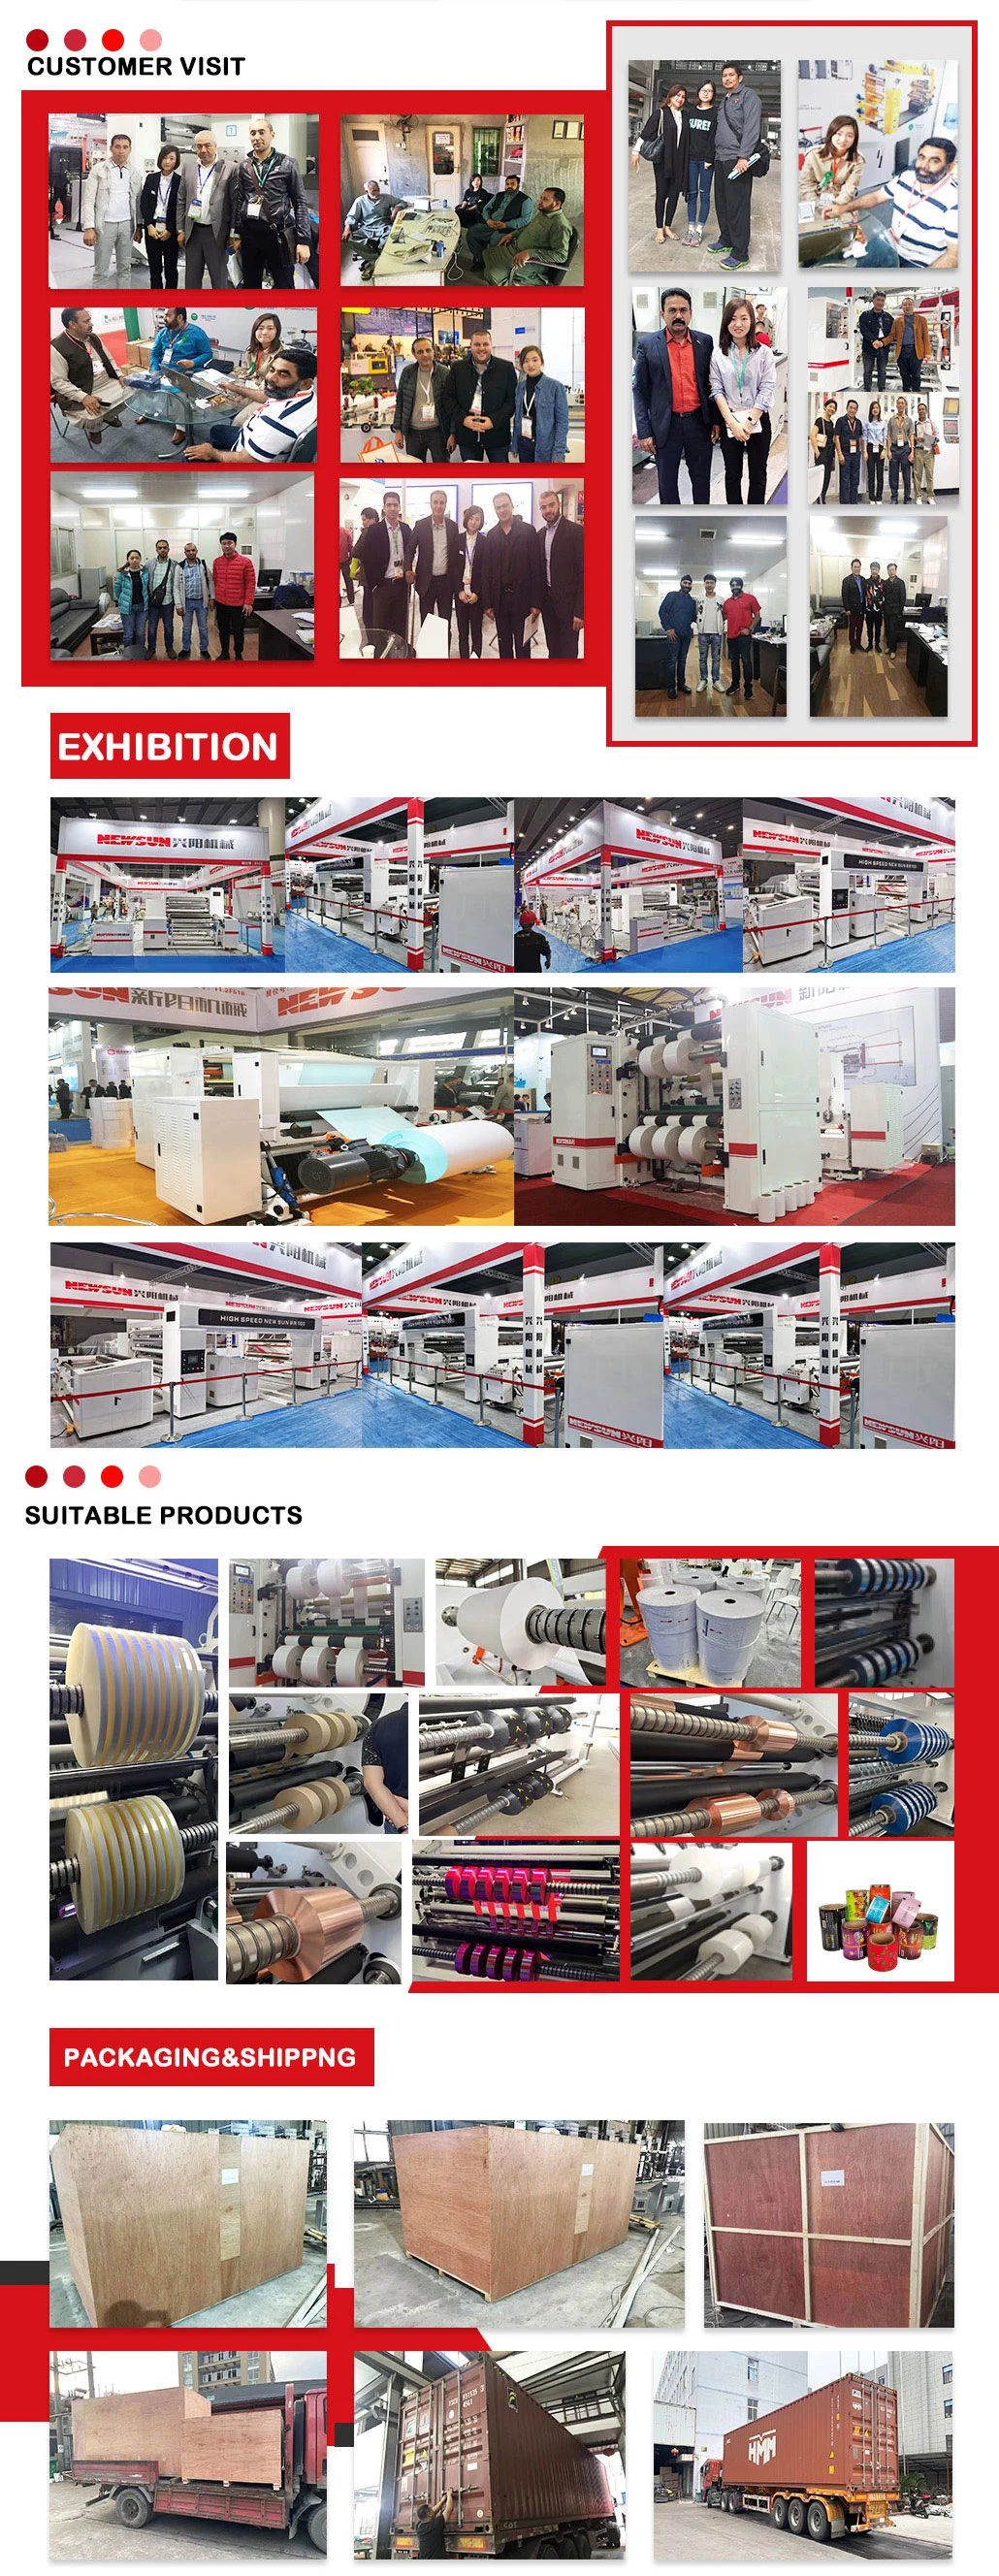 Multi-Purpose Digital Creasing Machine and Paper Perforating and Paper Slitting Machine Jumbo Paper Roll Slitter Rewinder Machine Paper Converting Machine